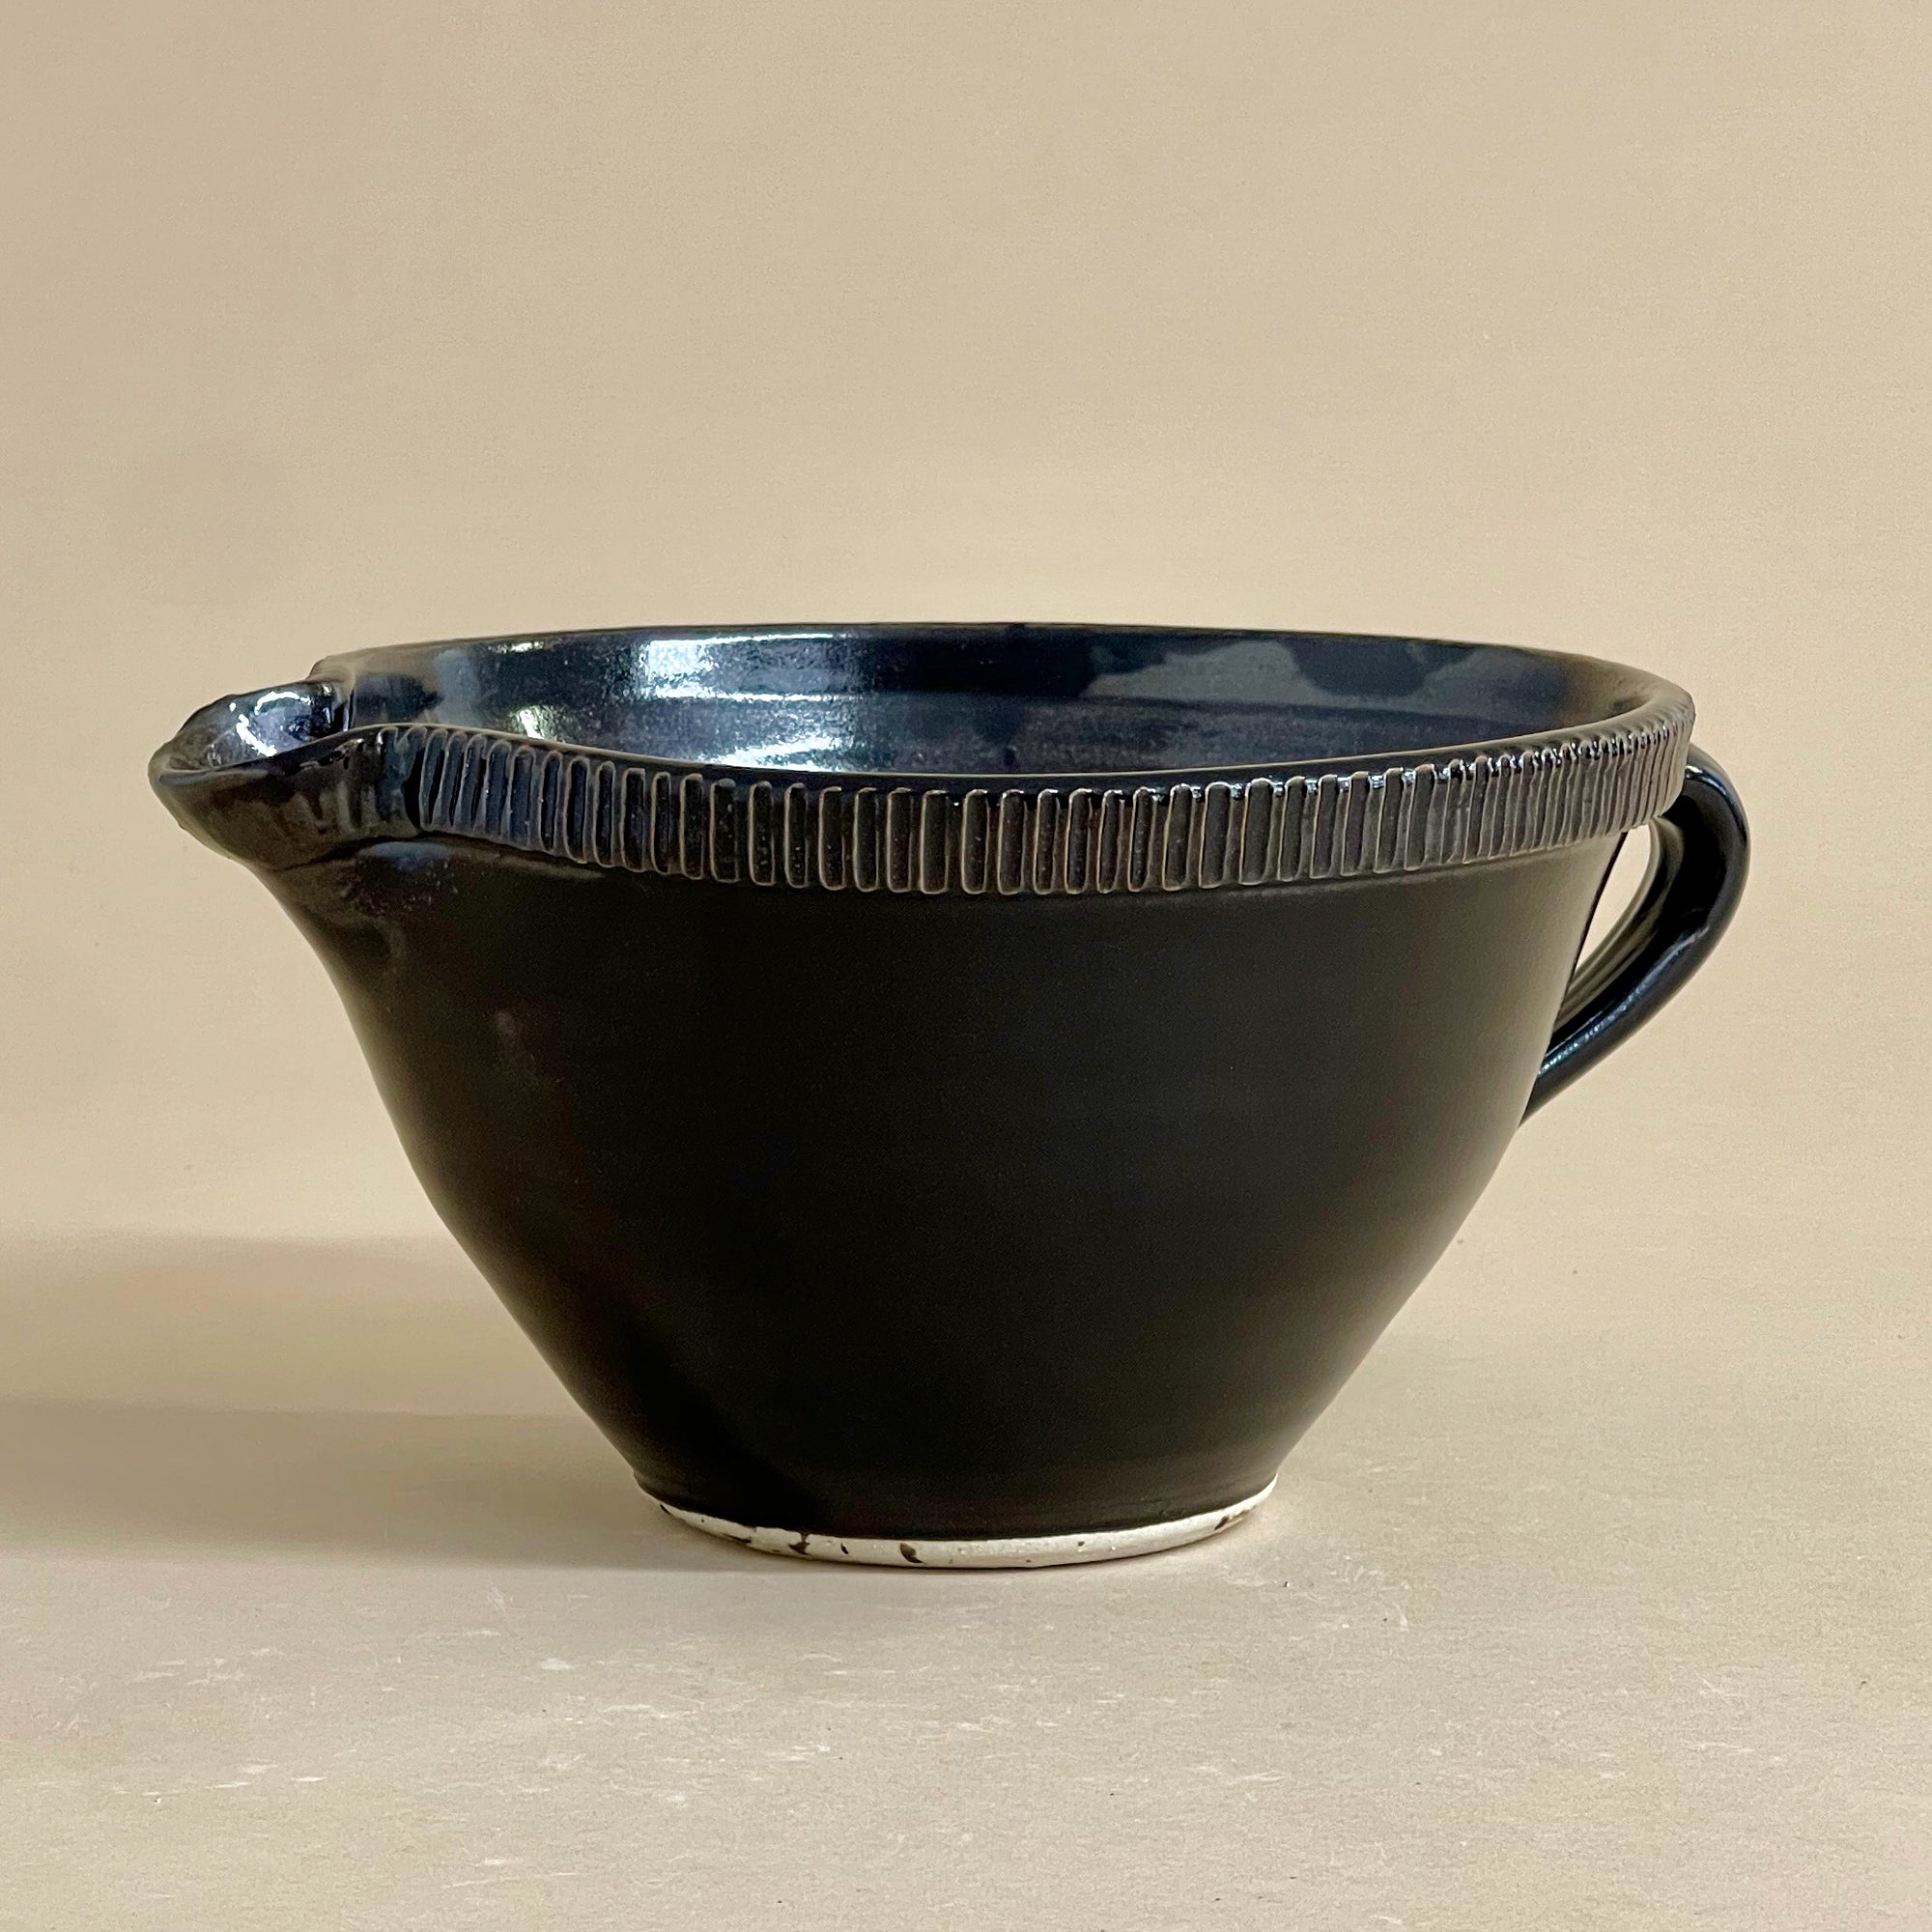 Glazed Stoneware Batter Bowls, Medium Size